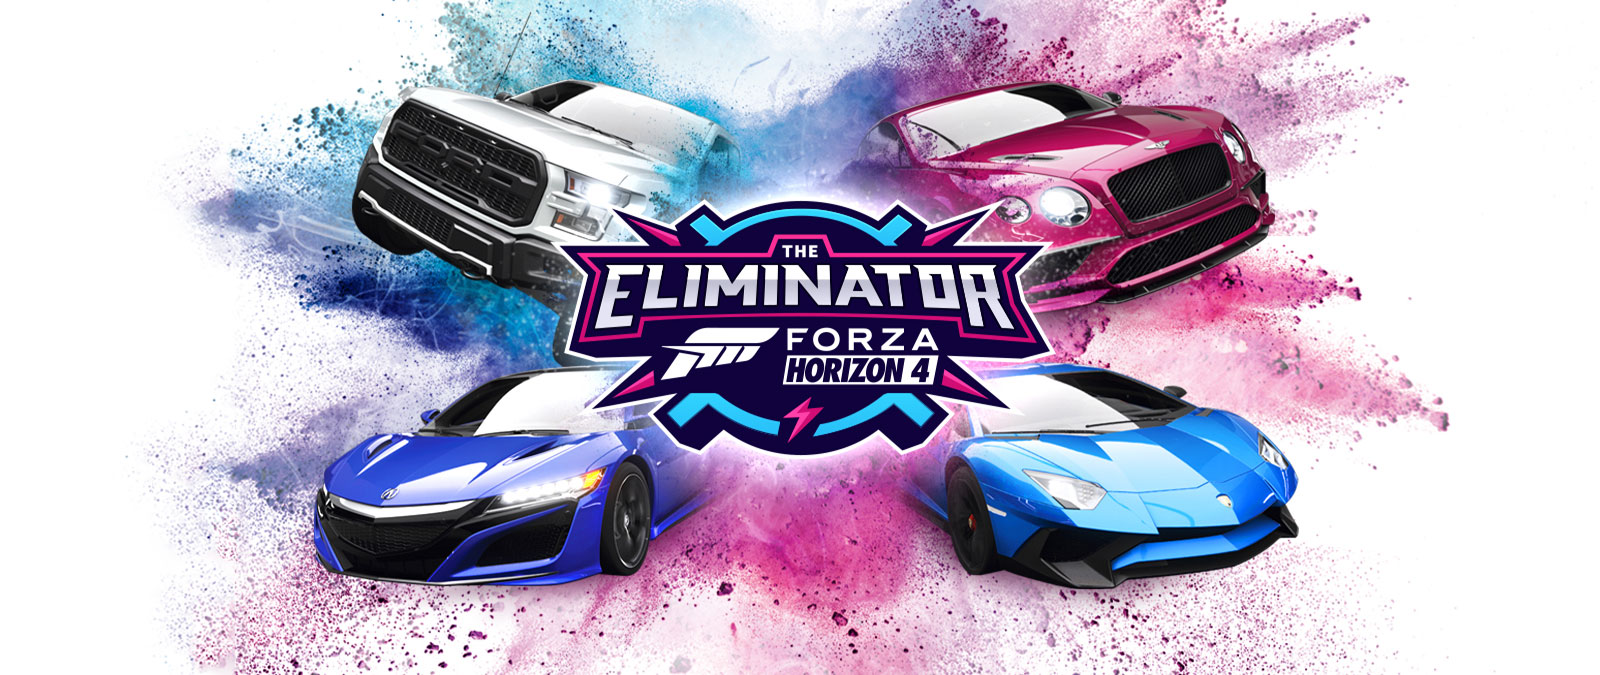 The Eliminator, logo Forza Horizon 4, quatre voitures entourées de nuages de poudre bleue et rose